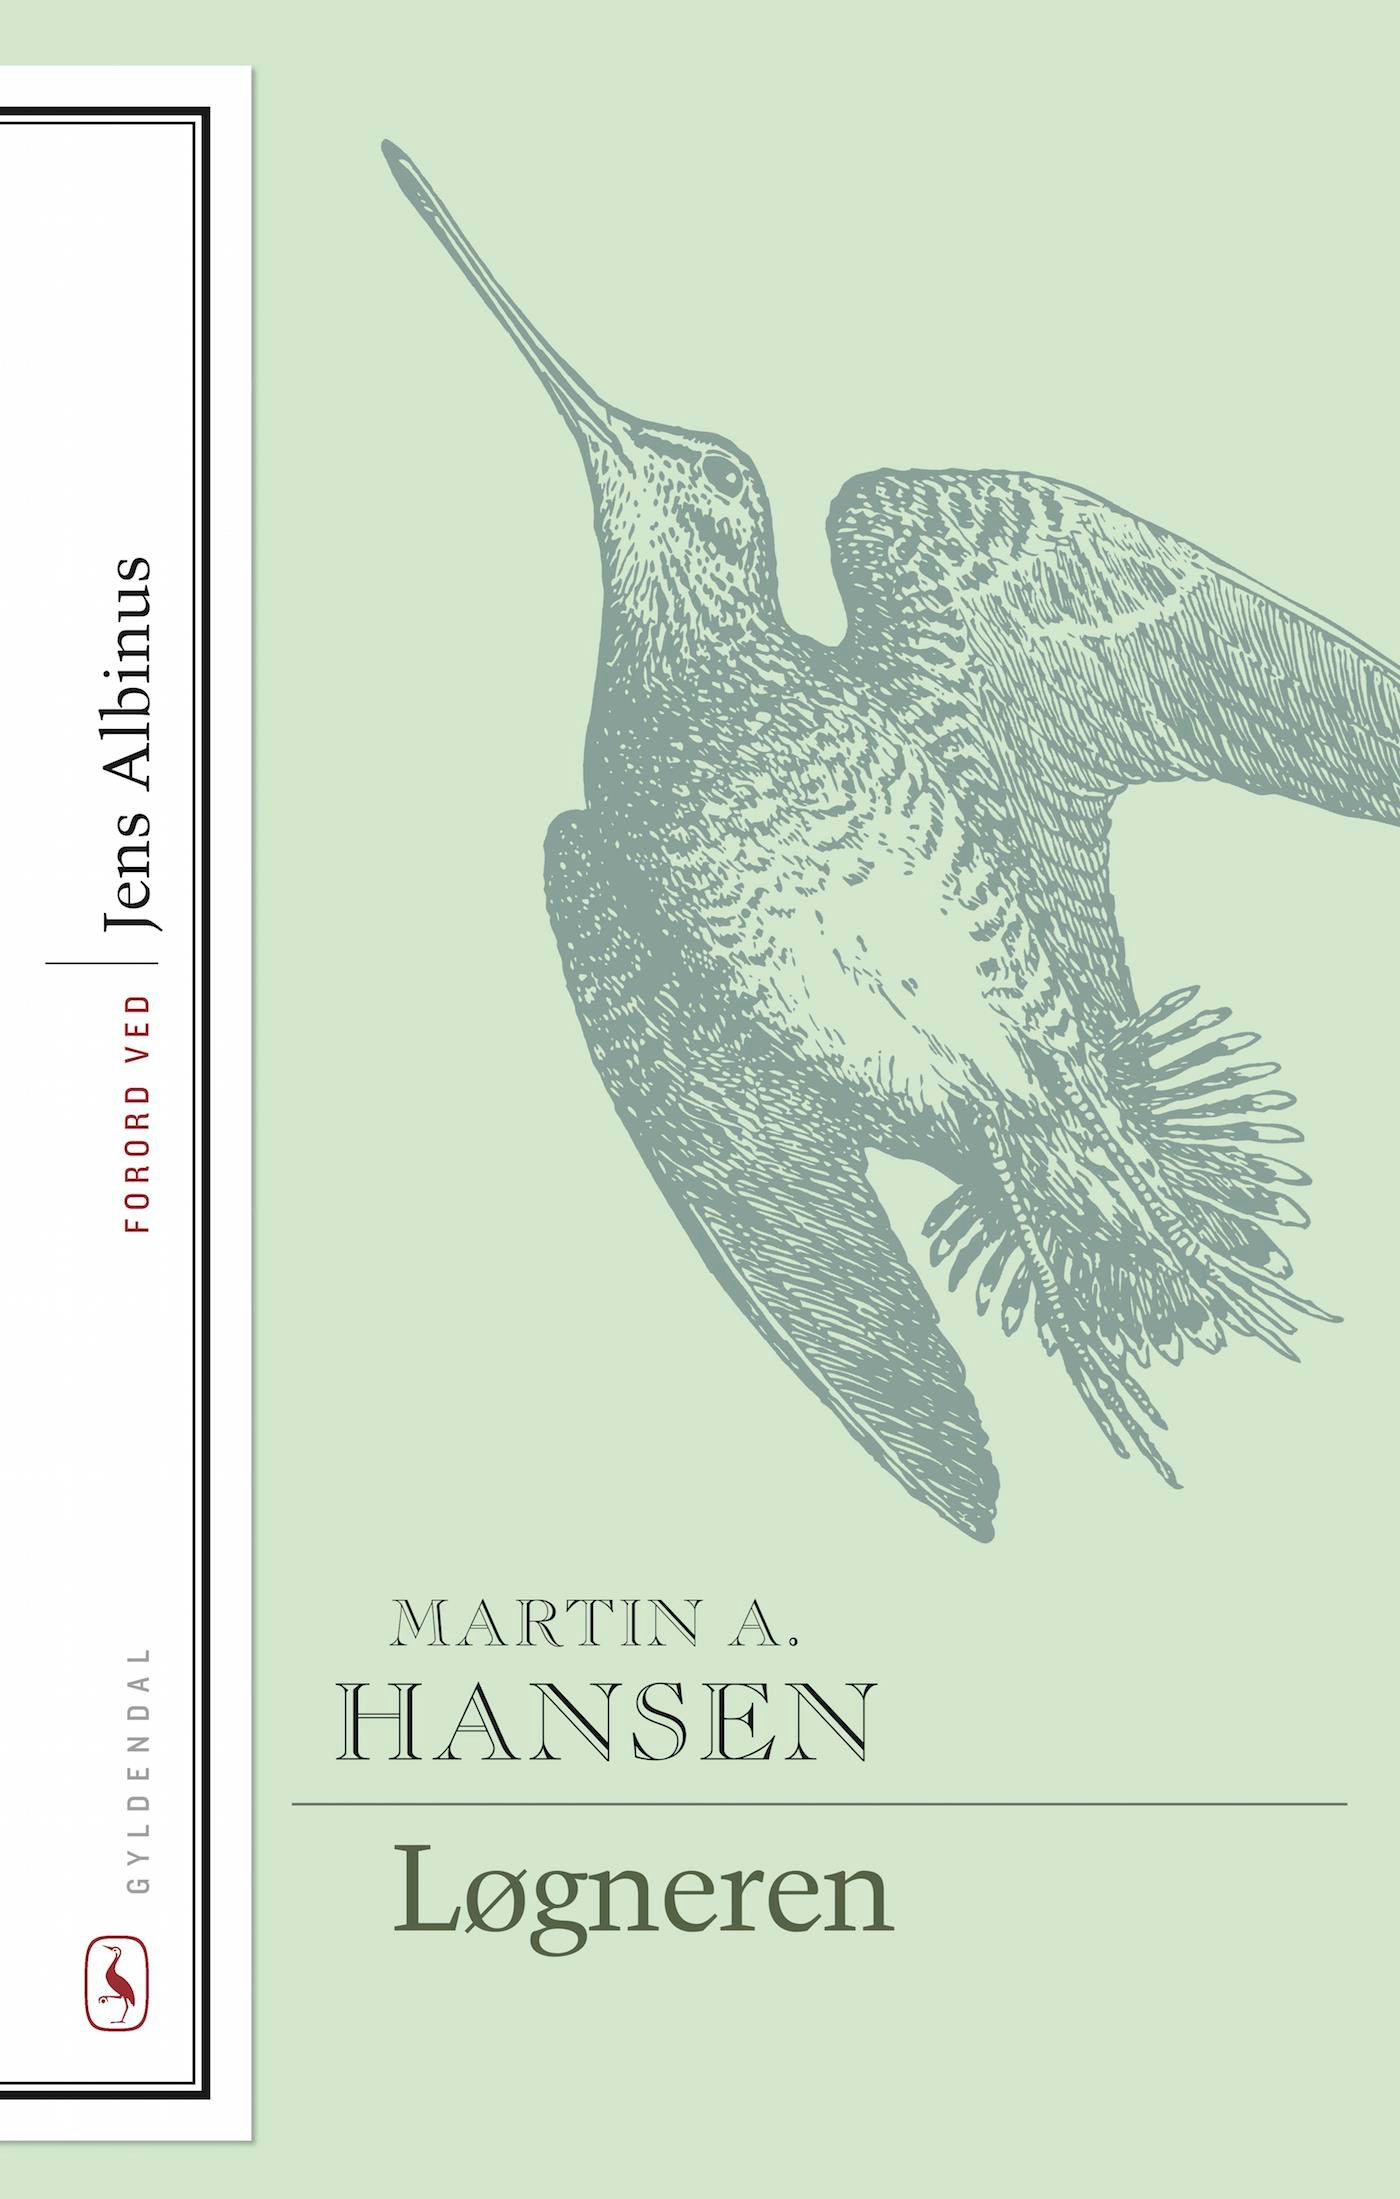 Løgneren, e-bok av Martin A. Hansen